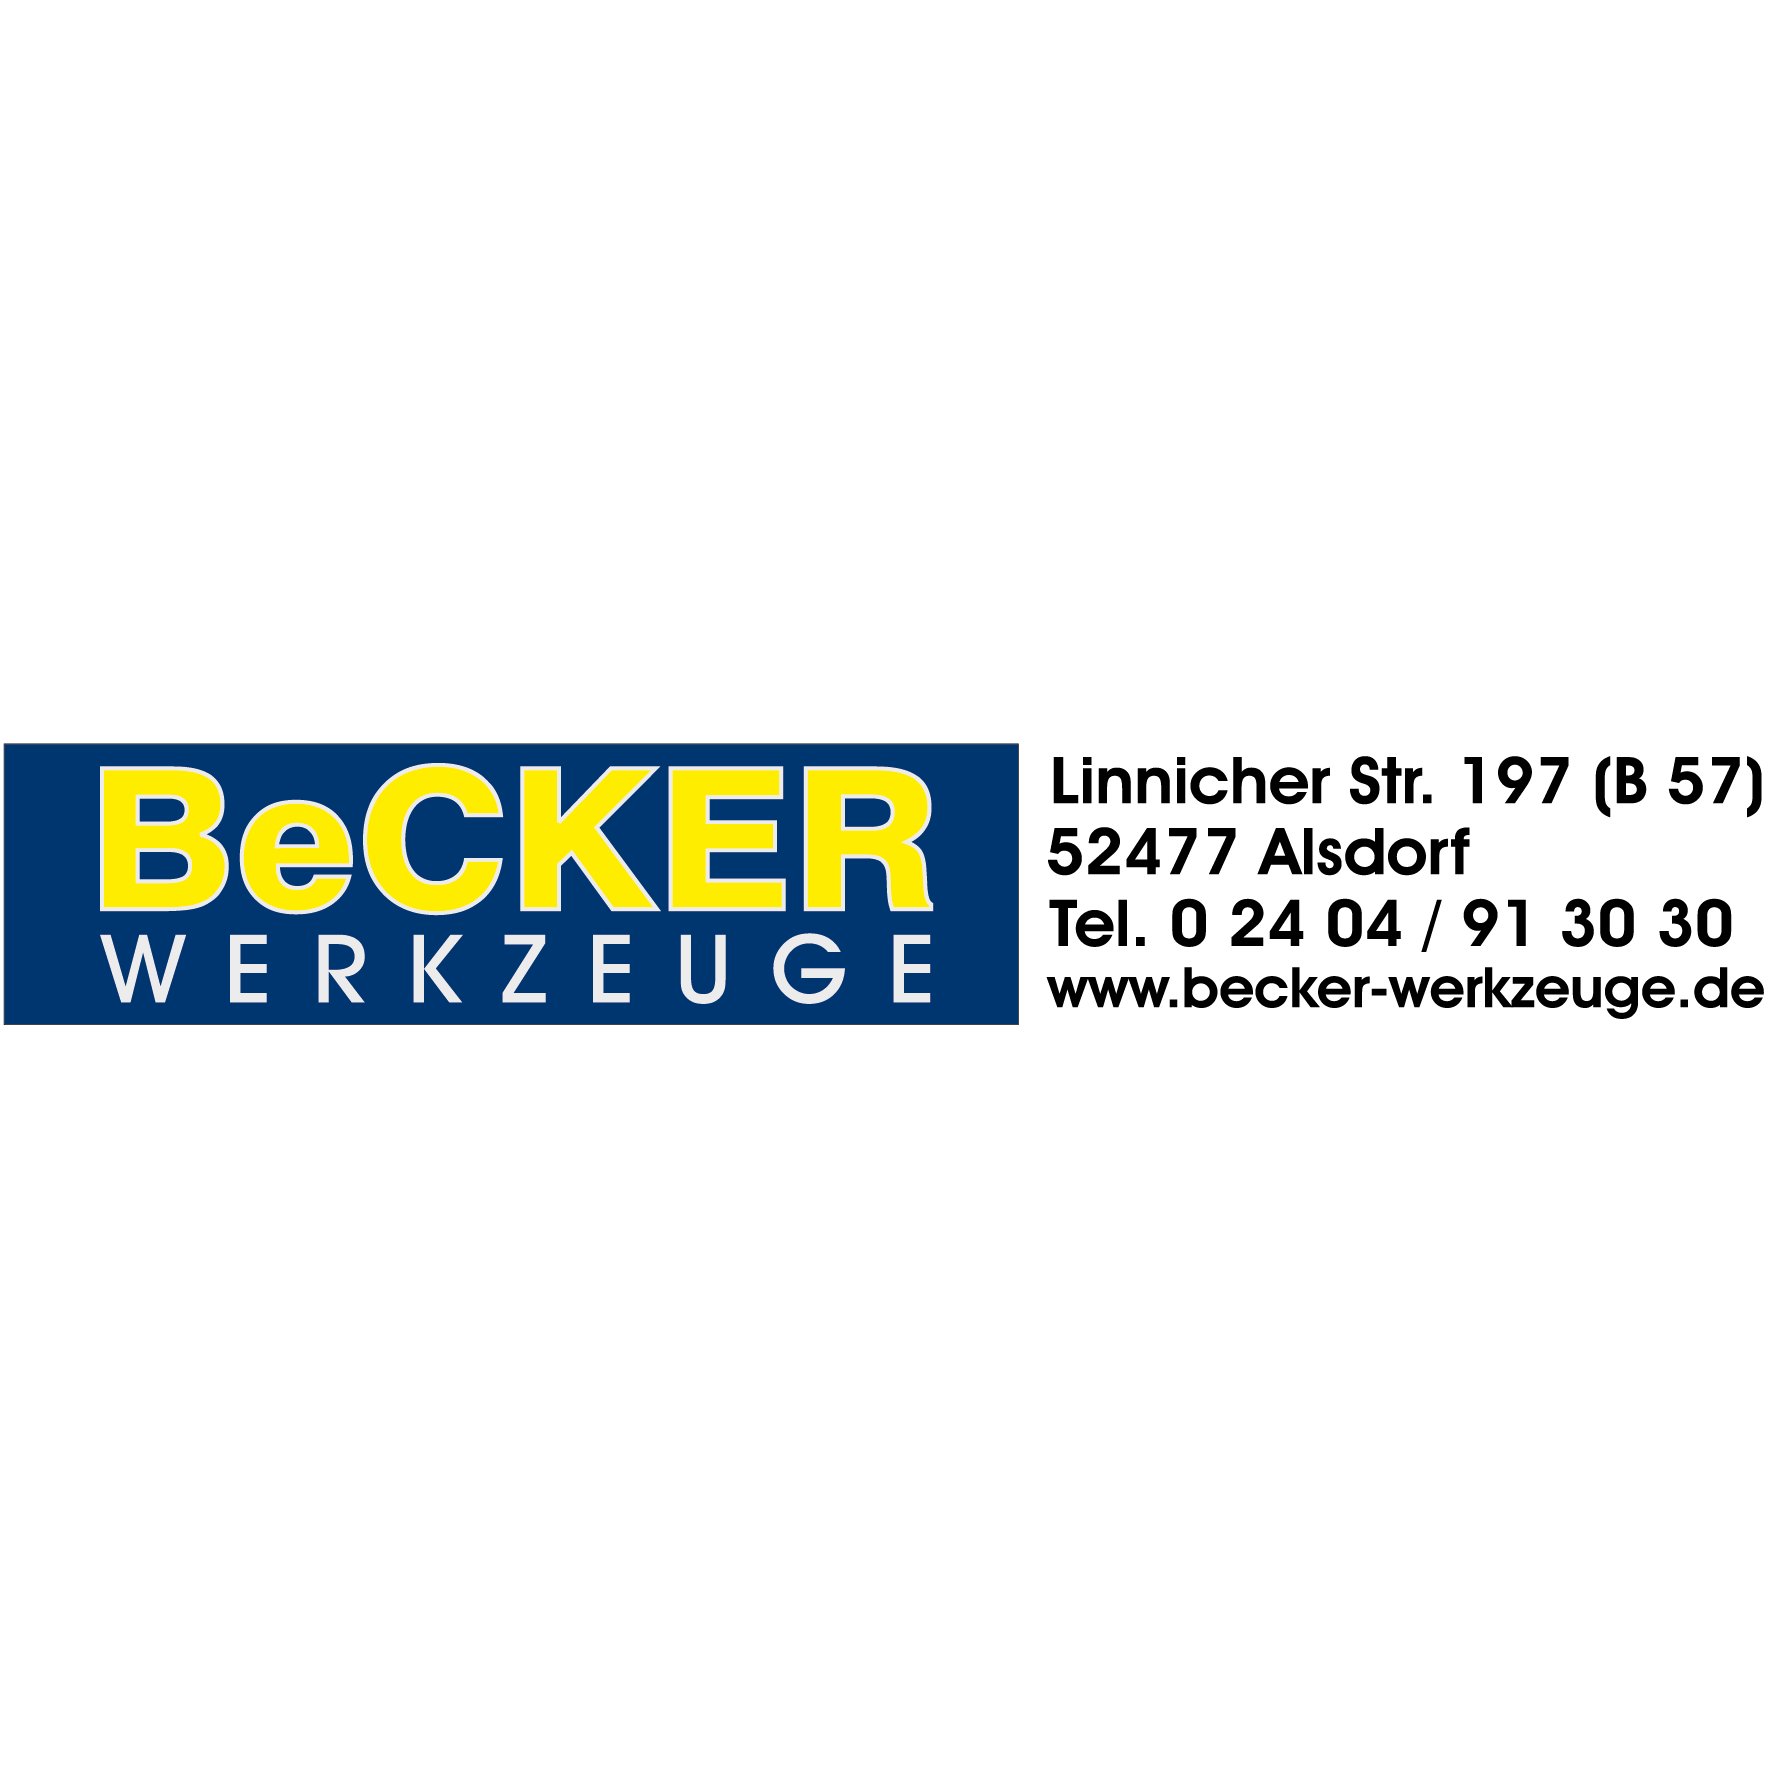 BeCKER - Werkzeuge in Alsdorf